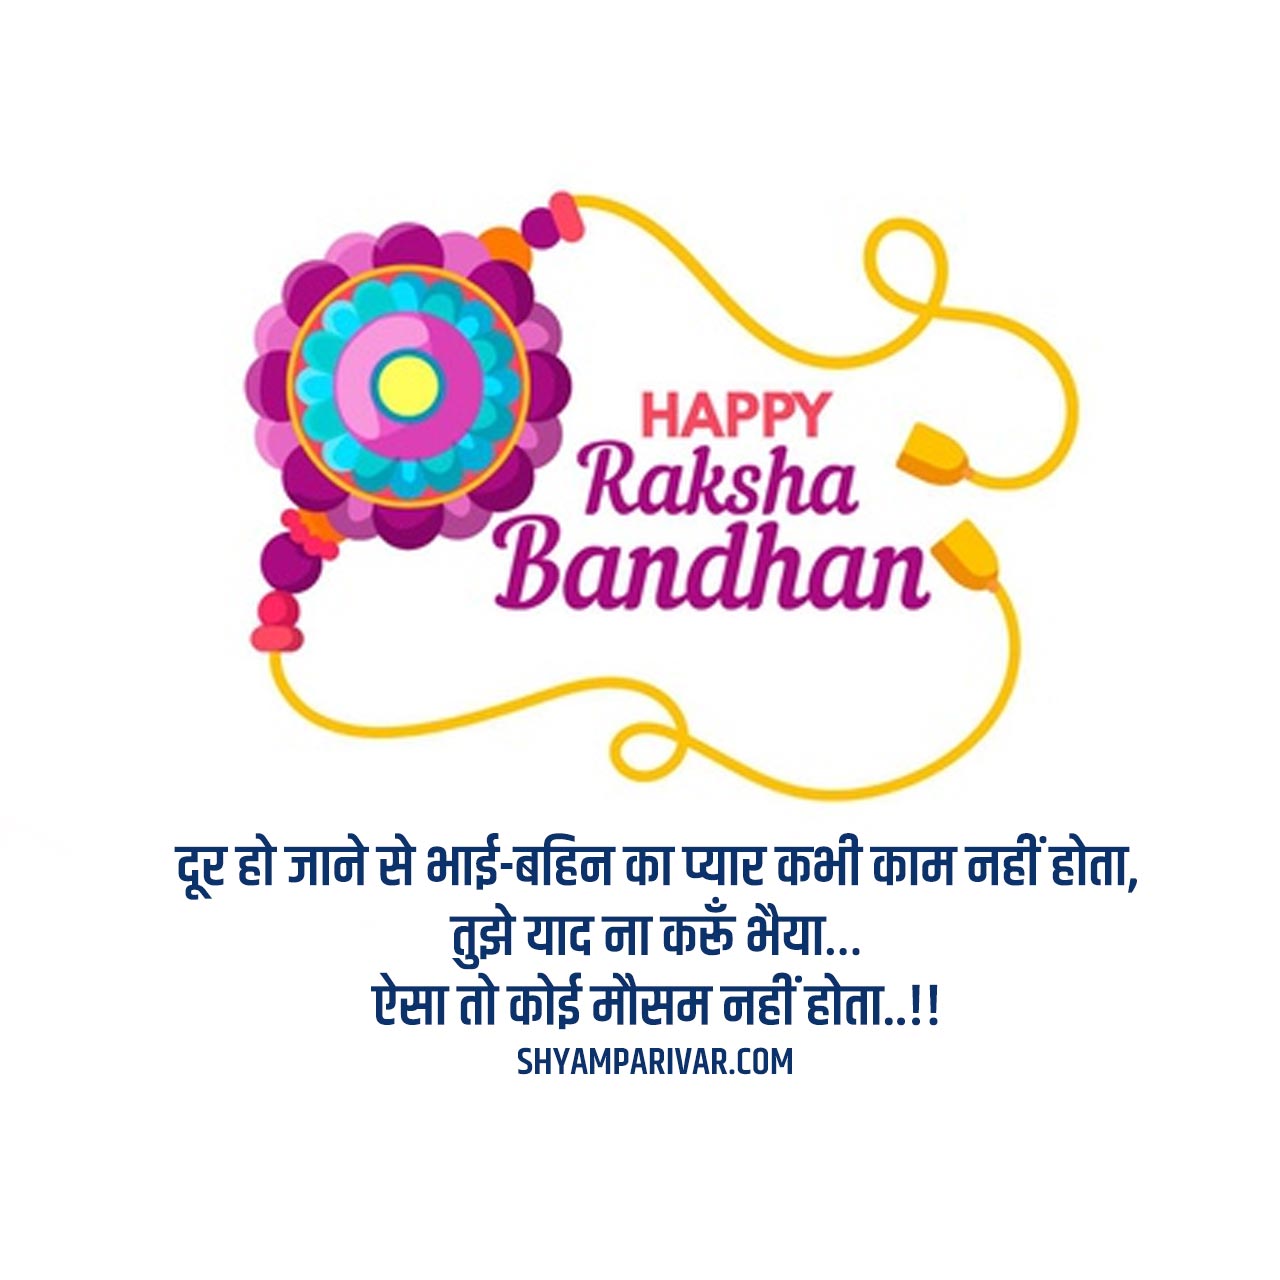 Happy Raksha Bandhan Photo With Quotes in Hindi